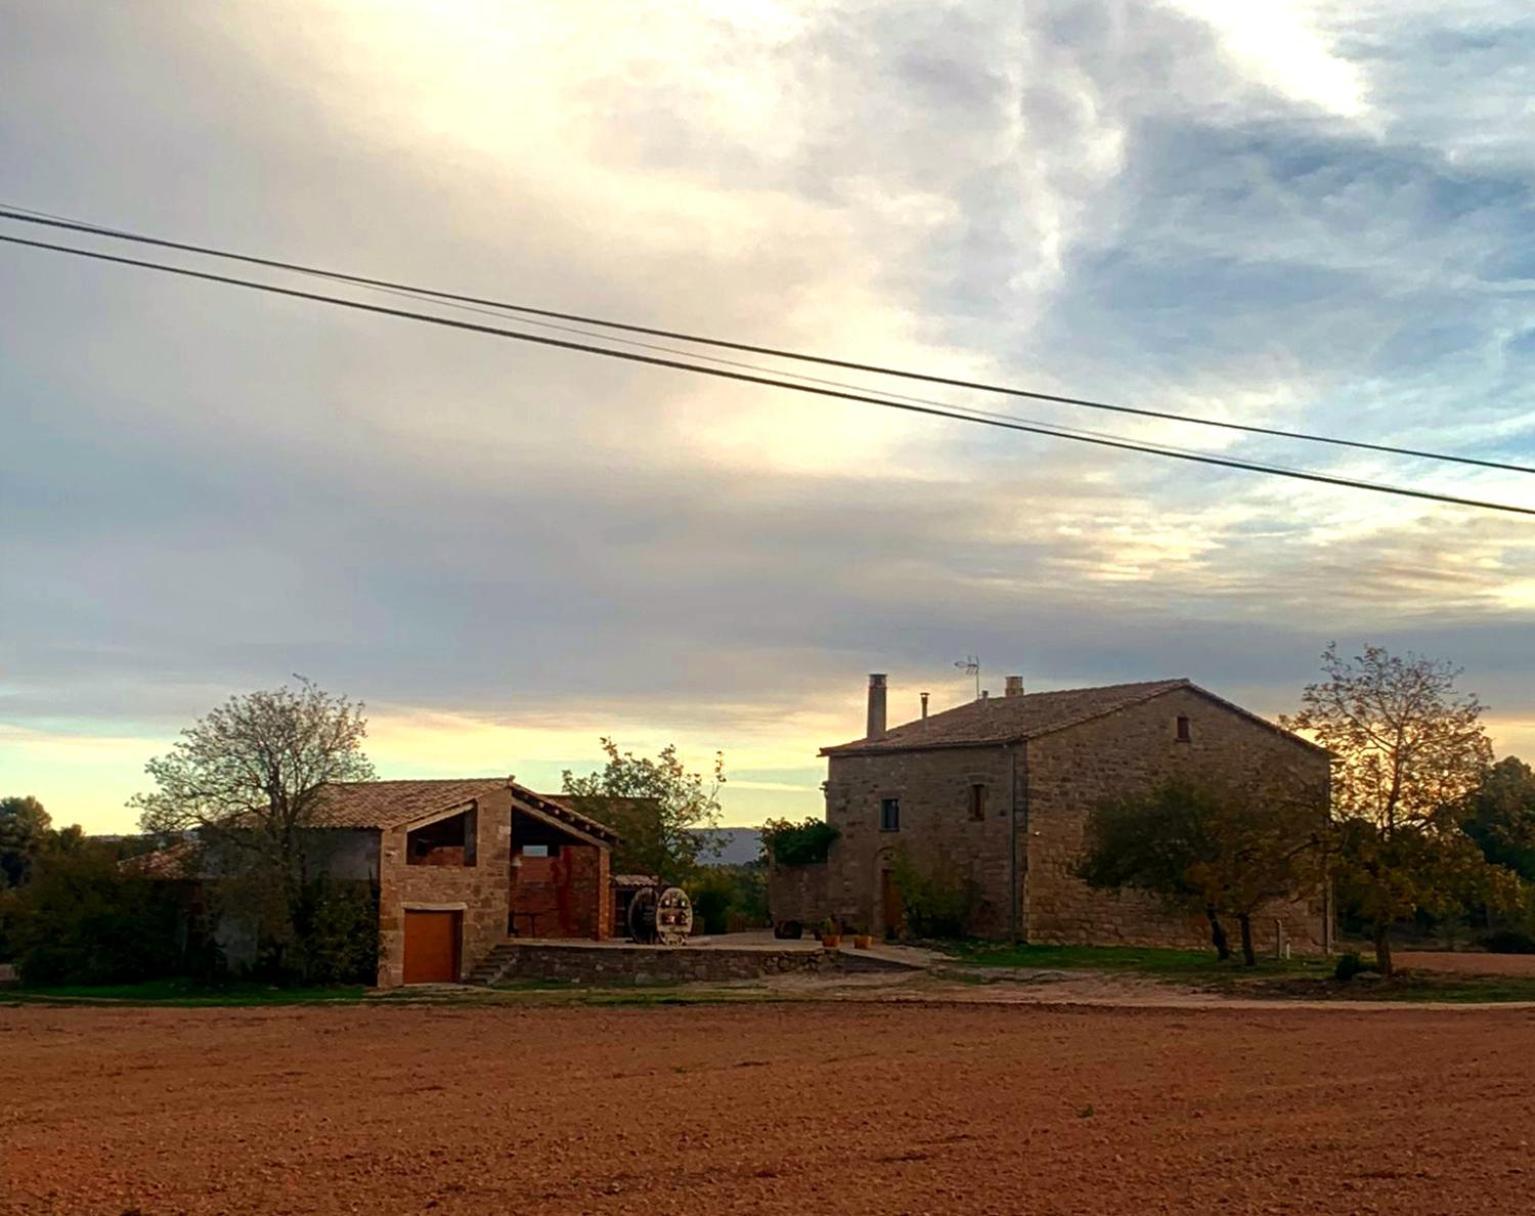 Cal Ganyada, Casa Rural Cardona Villa Exterior foto